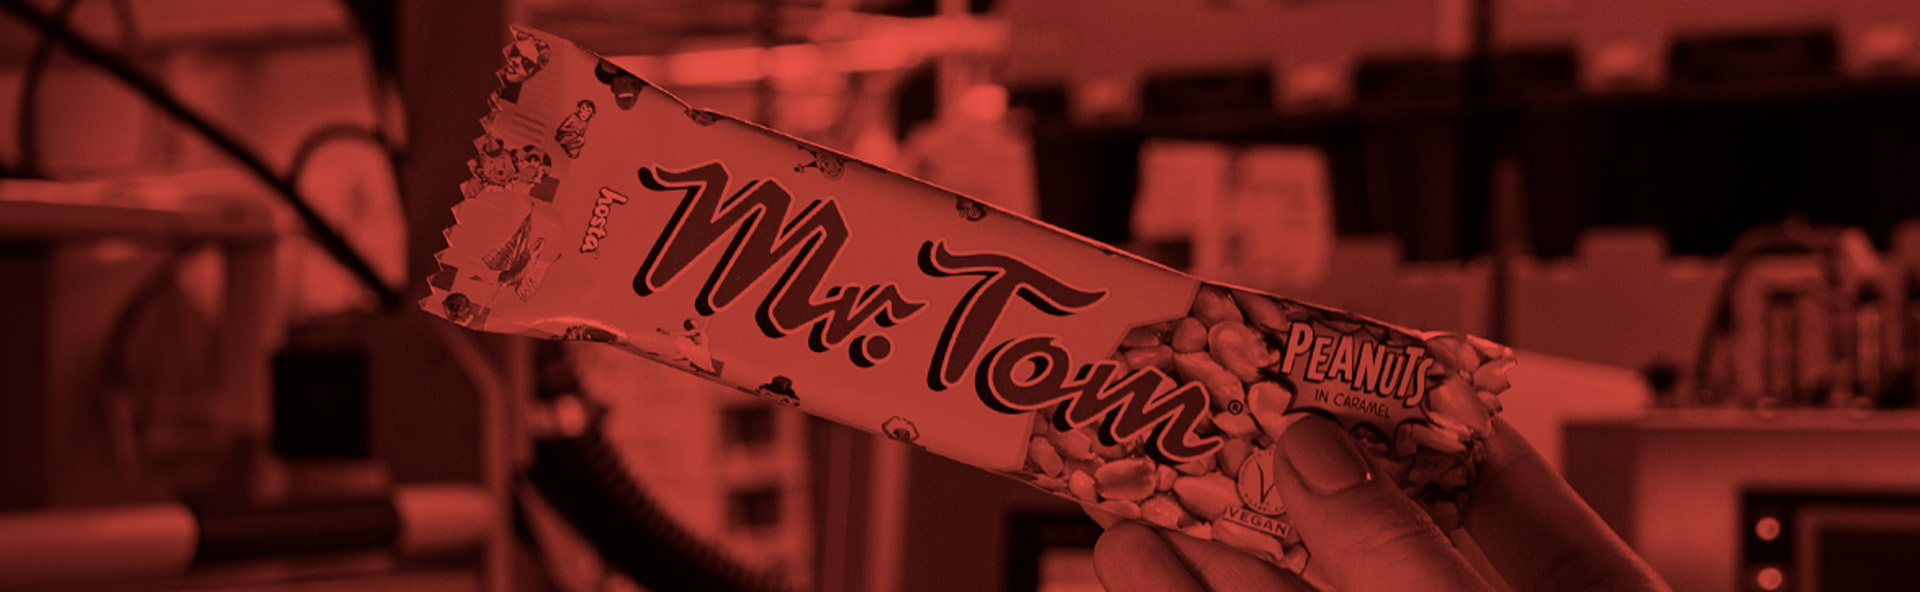 Kundenreferenz Hosta Group: Erdnussriegel Mr.Tom in der Hand